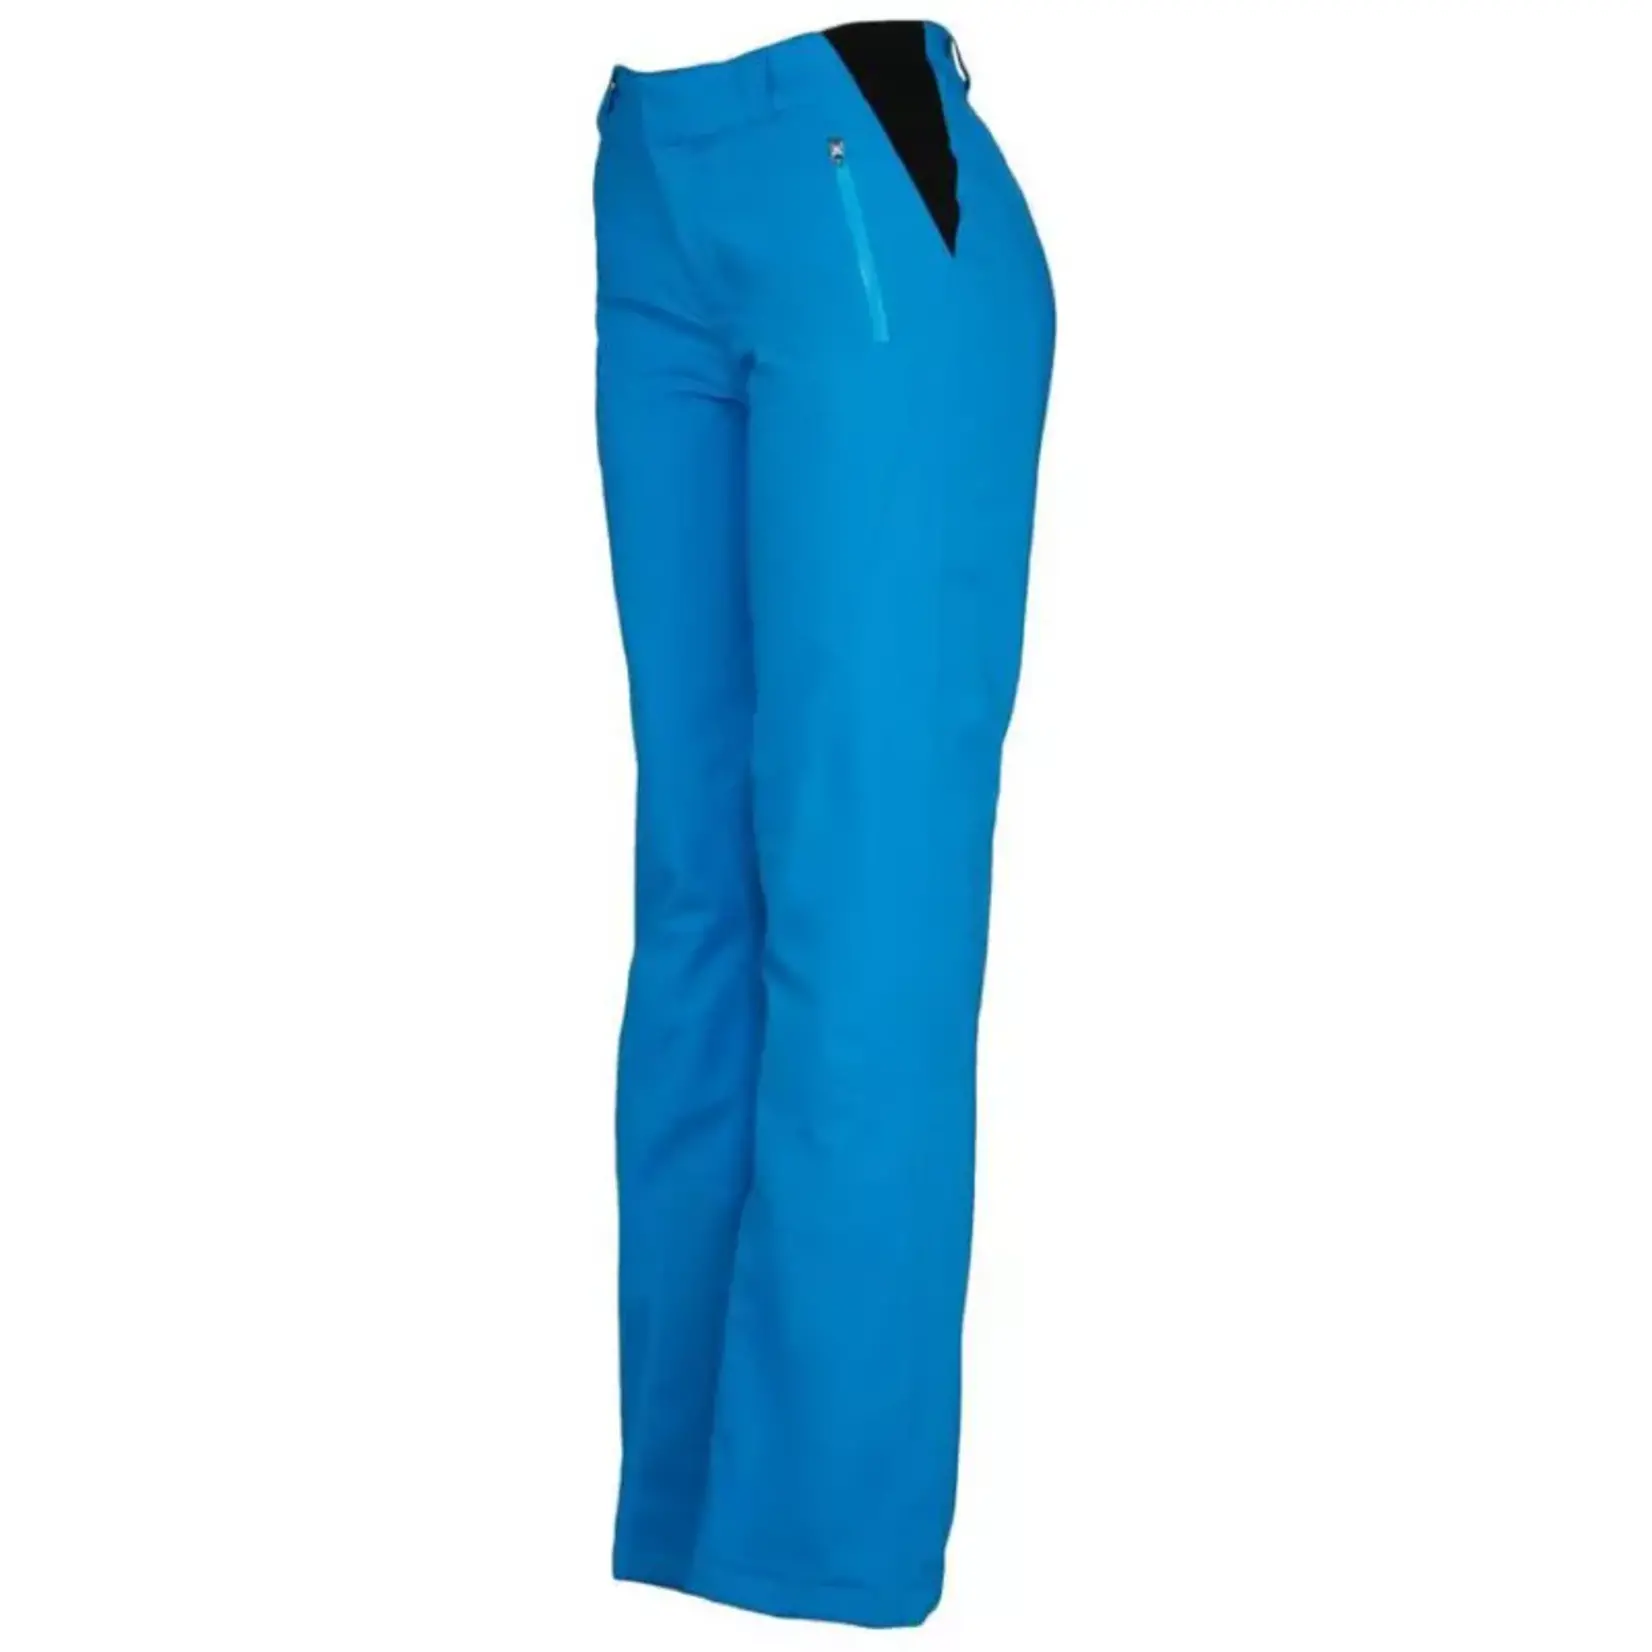 SKI CLOTHING Spyder WINNER GTX - Ski Pants - Women's - wish